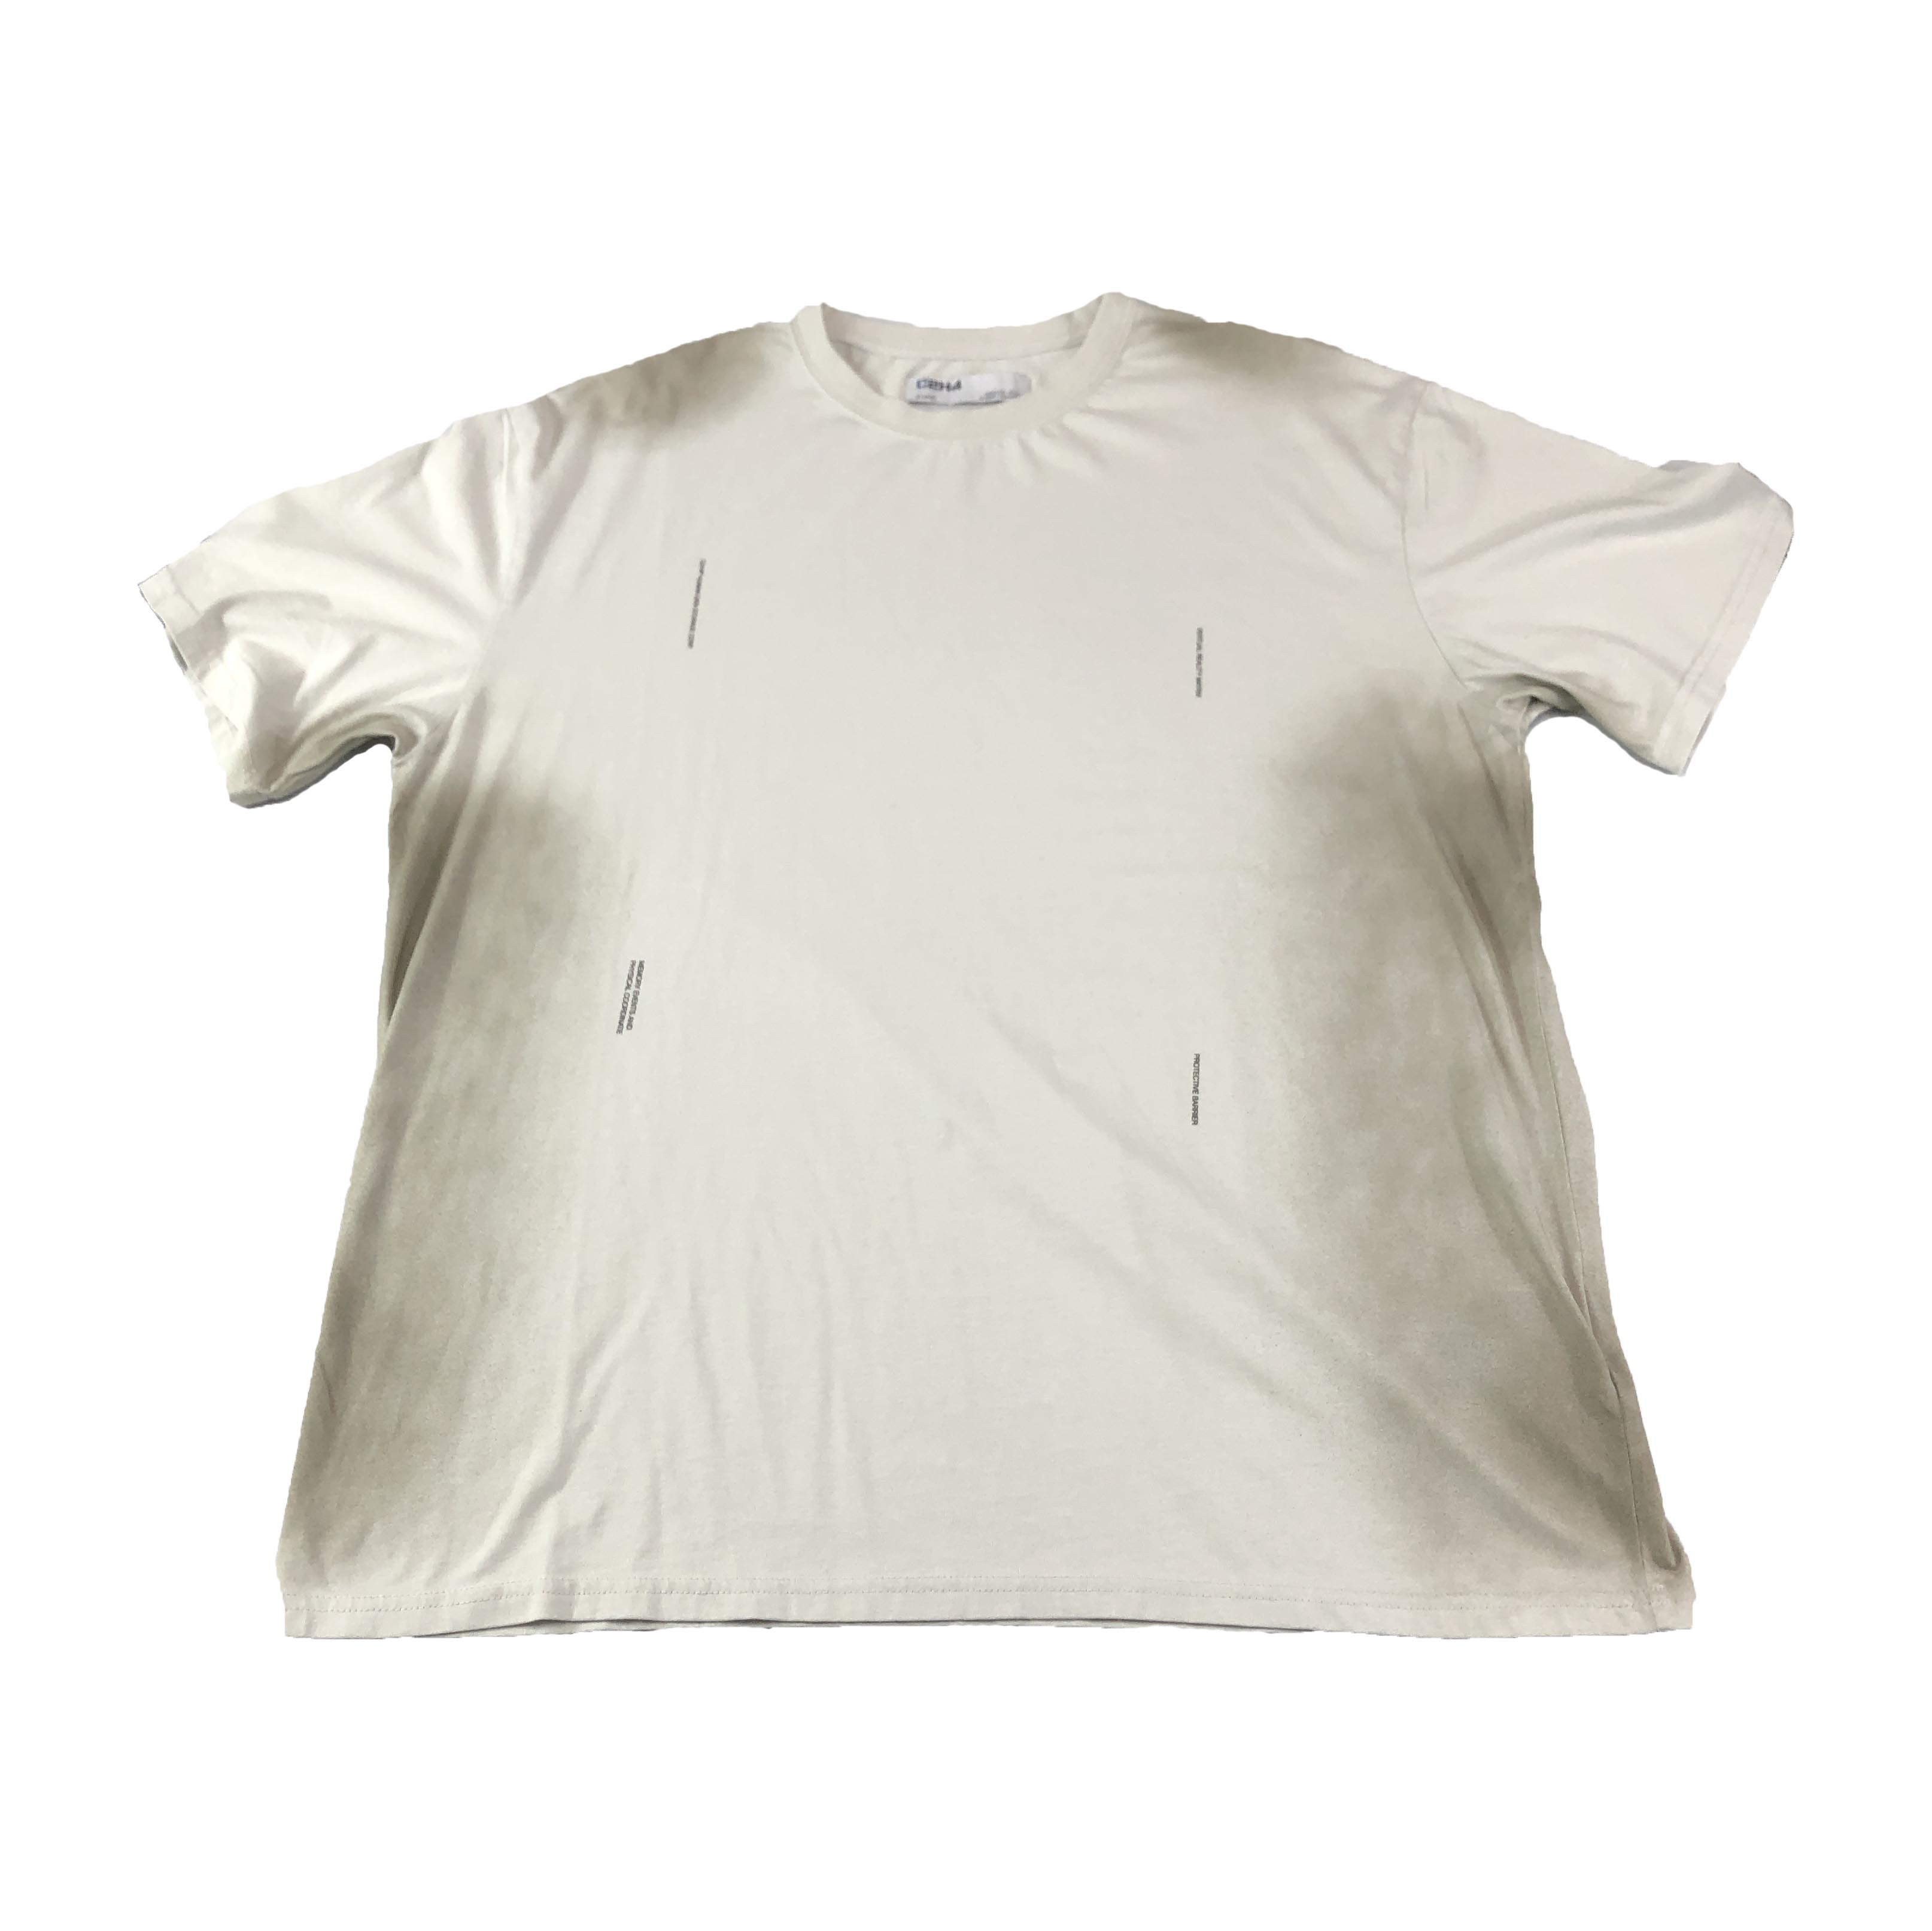 [C2H4] &quot;Neonaissance&quot; Sprayed T-shirt - Size XL